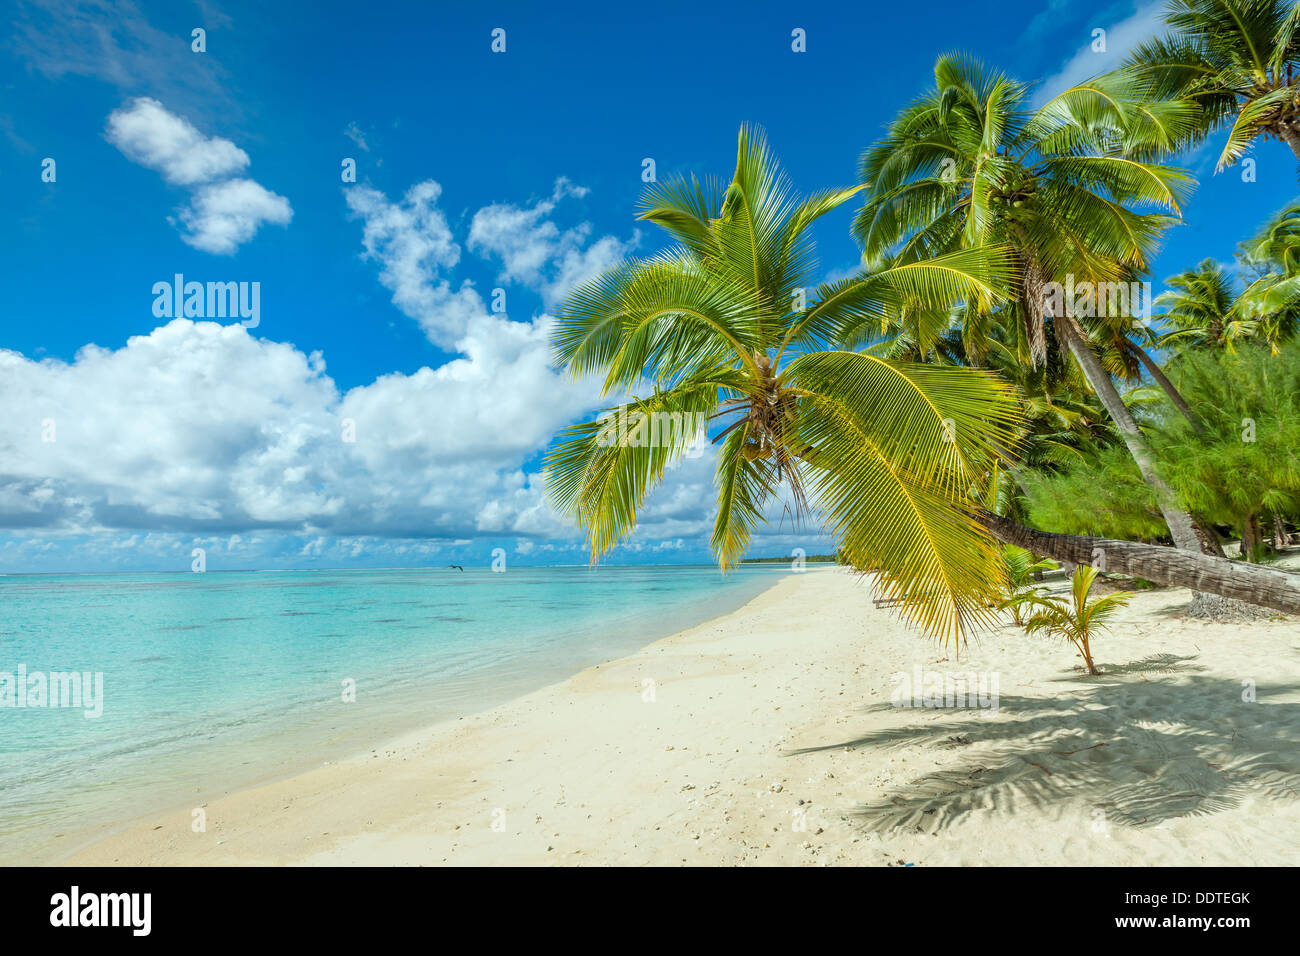 Les îles Cook, l'île d'Aitutaki, tropical plage de sable blanc aux eaux turquoises et de palmiers - Amuri Beach, South Pacific Banque D'Images